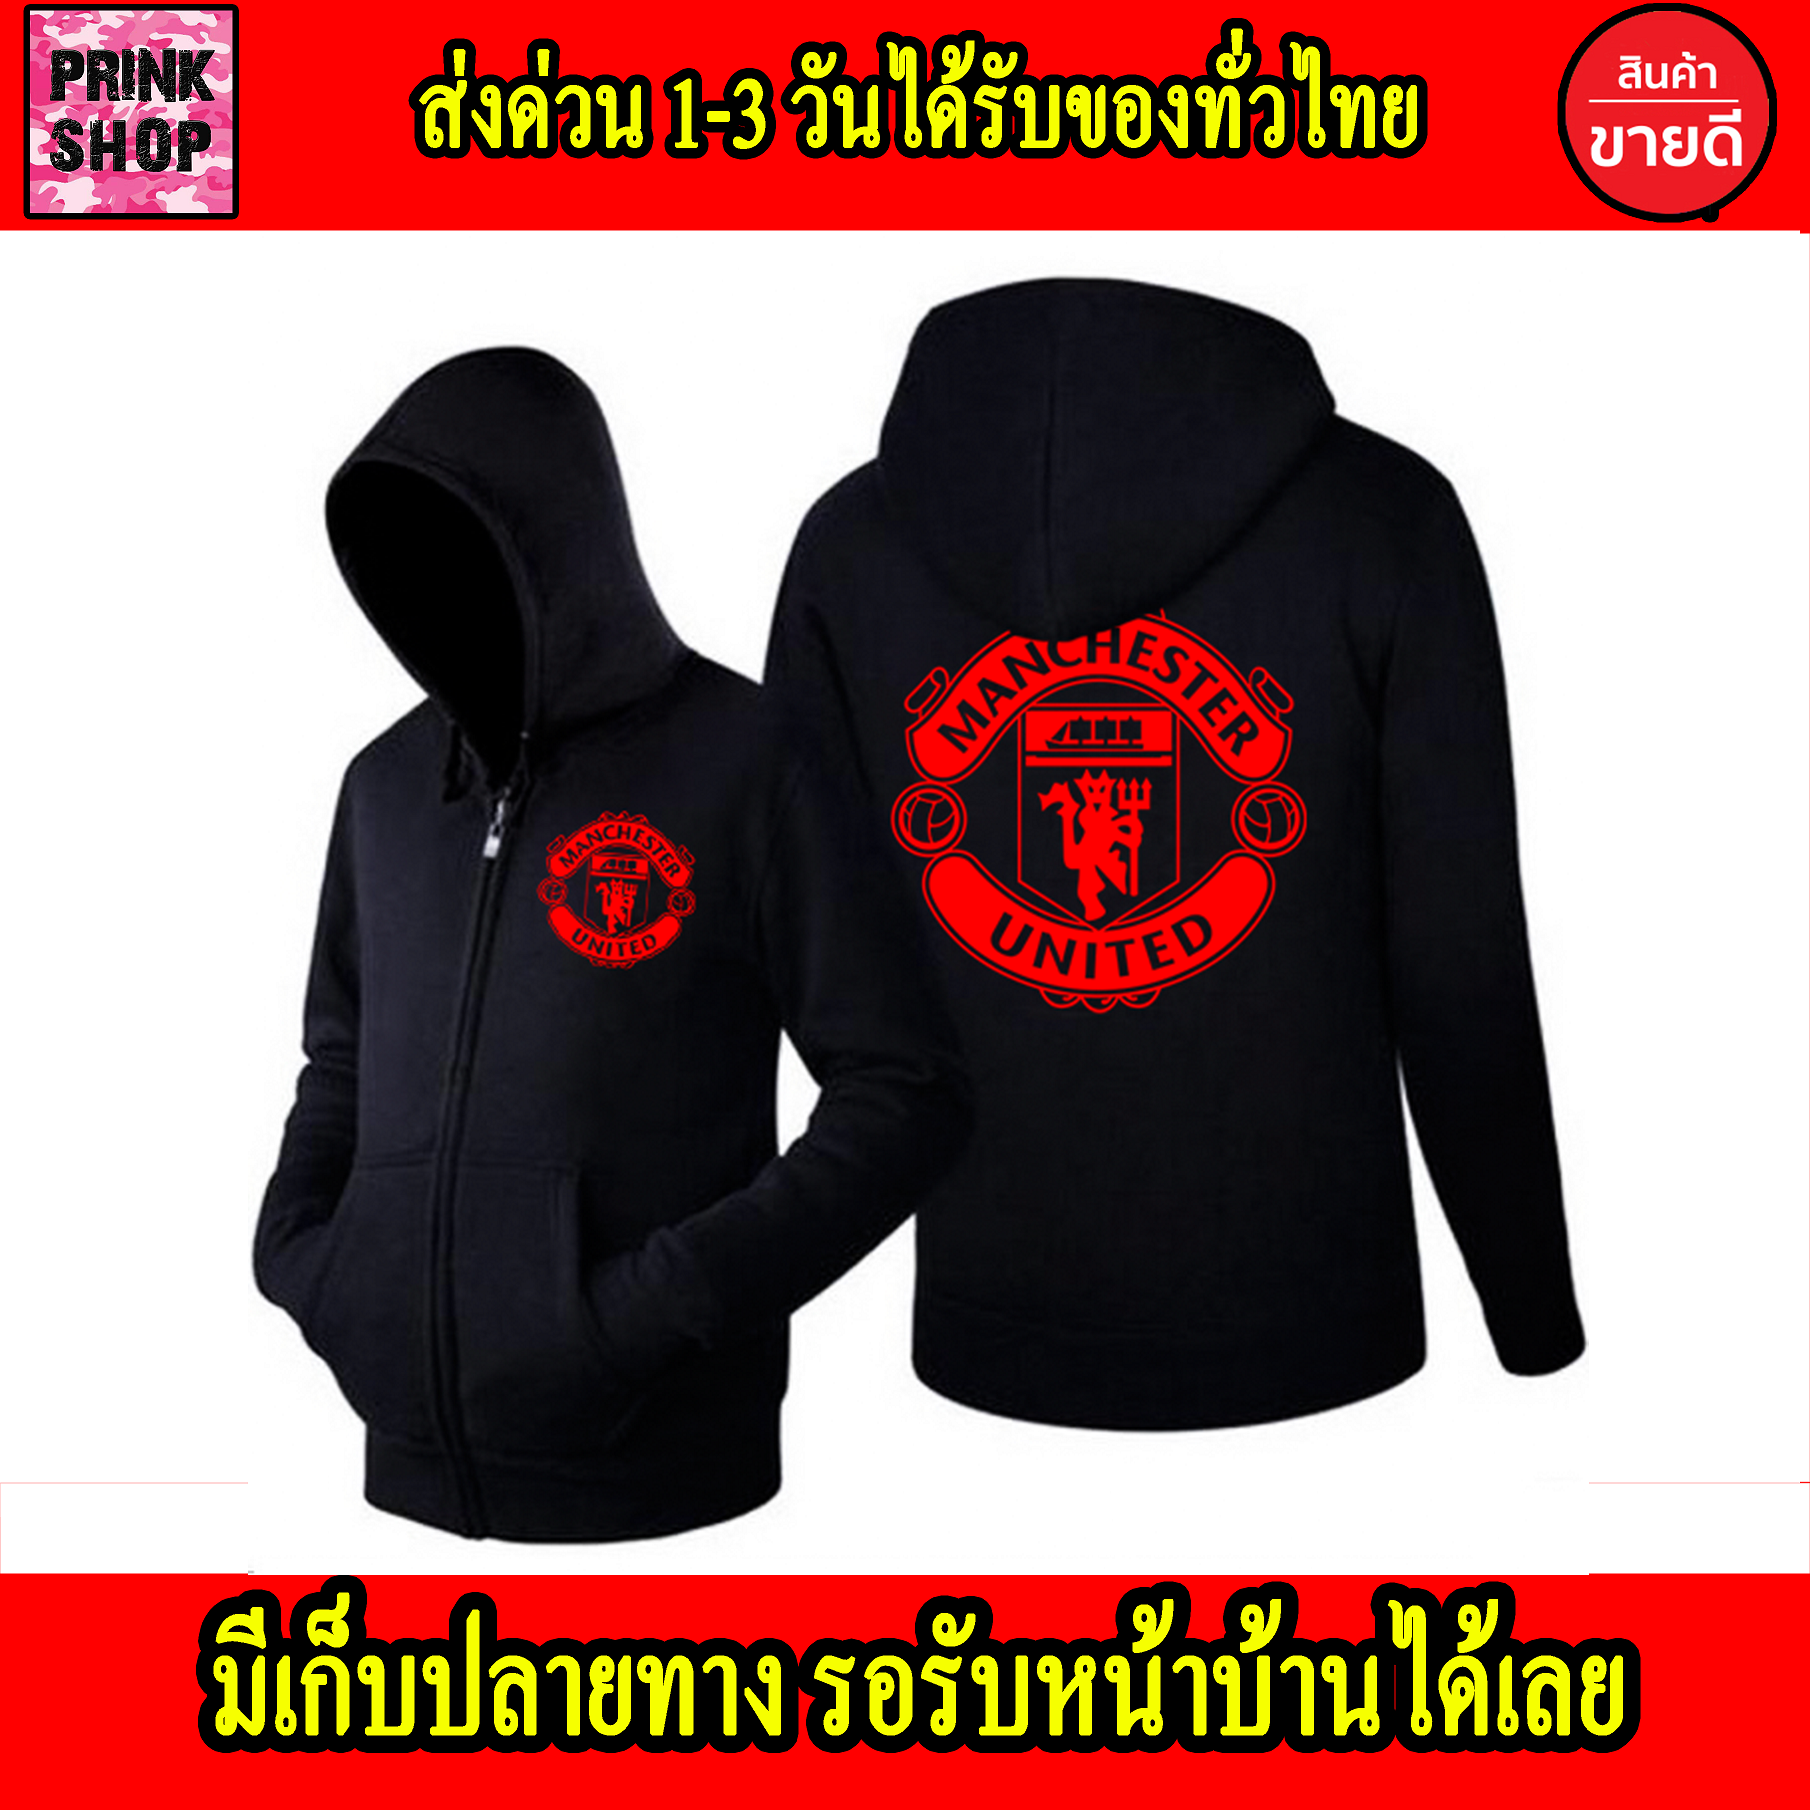 เสื้อฮู้ด Manchester United แมนเชสเตอร์ ยูไนเต็ด Man U ถูกที่สุด ส่งด่วนทั่วไทย แบบซิป สวม งานดี สกรีนแบบเฟล็ก PU สวยสดไม่แตกไม่ลอก